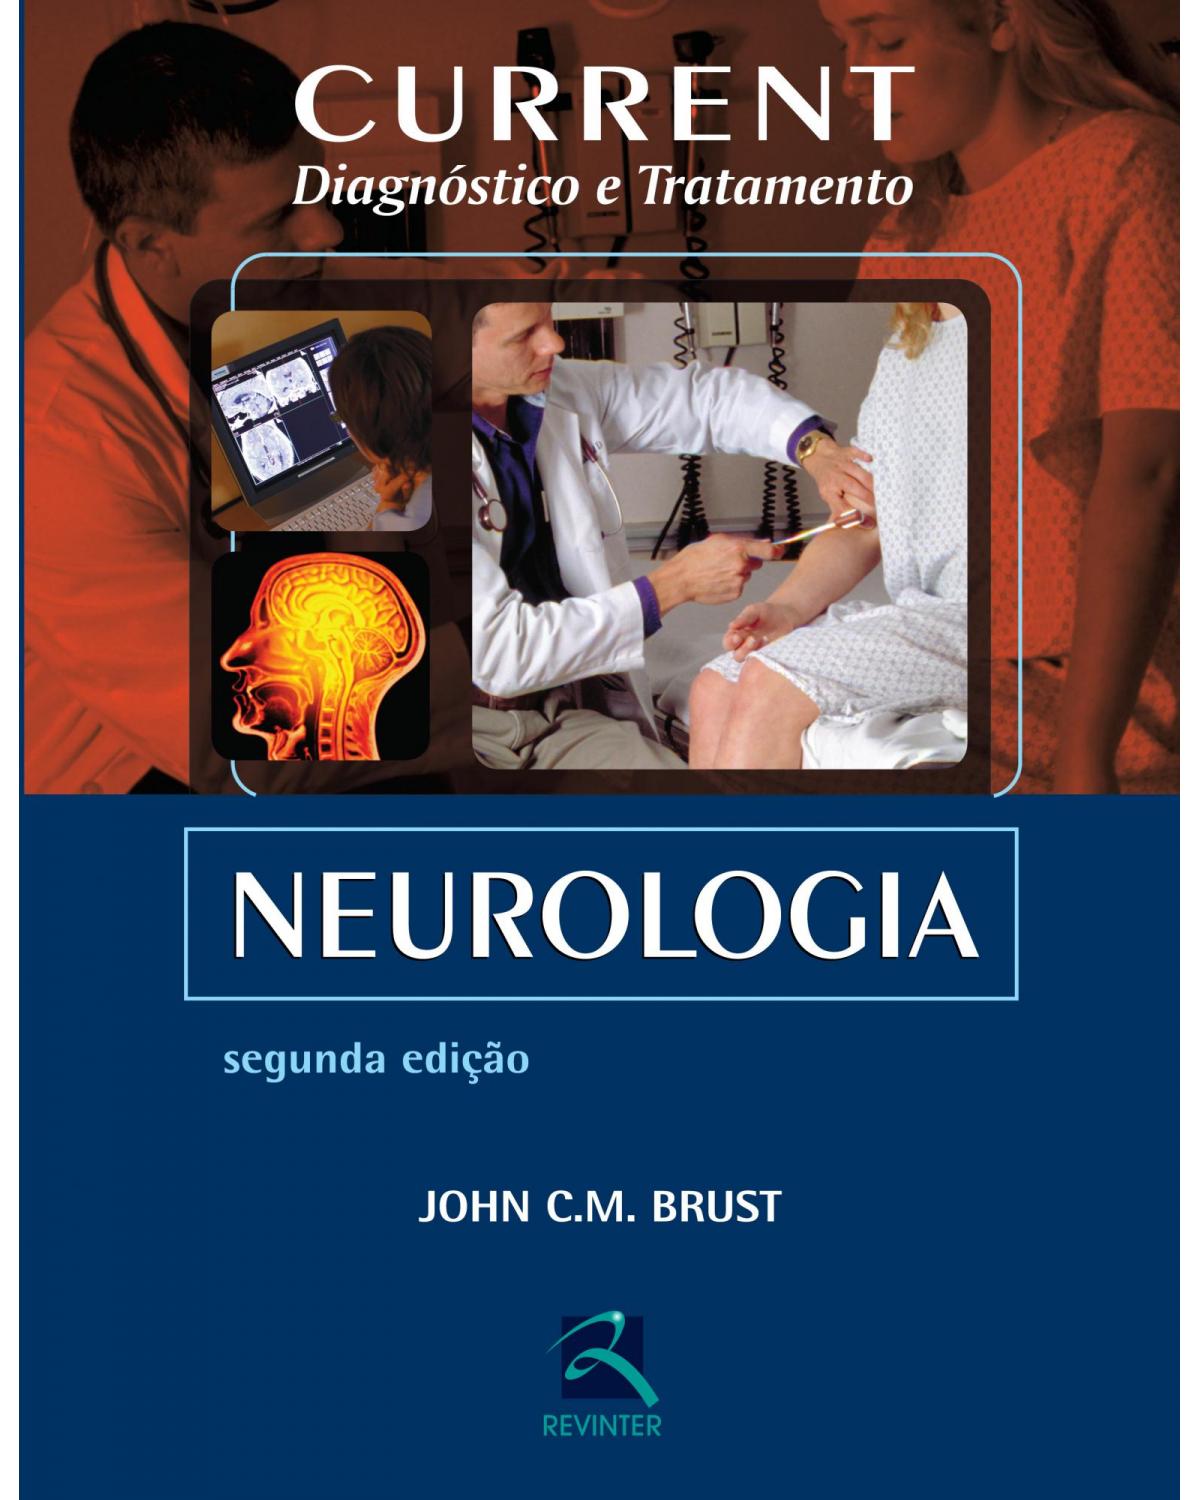 Current - Neurologia - Diagnóstico e Tratamento - 2ª Edição | 2016